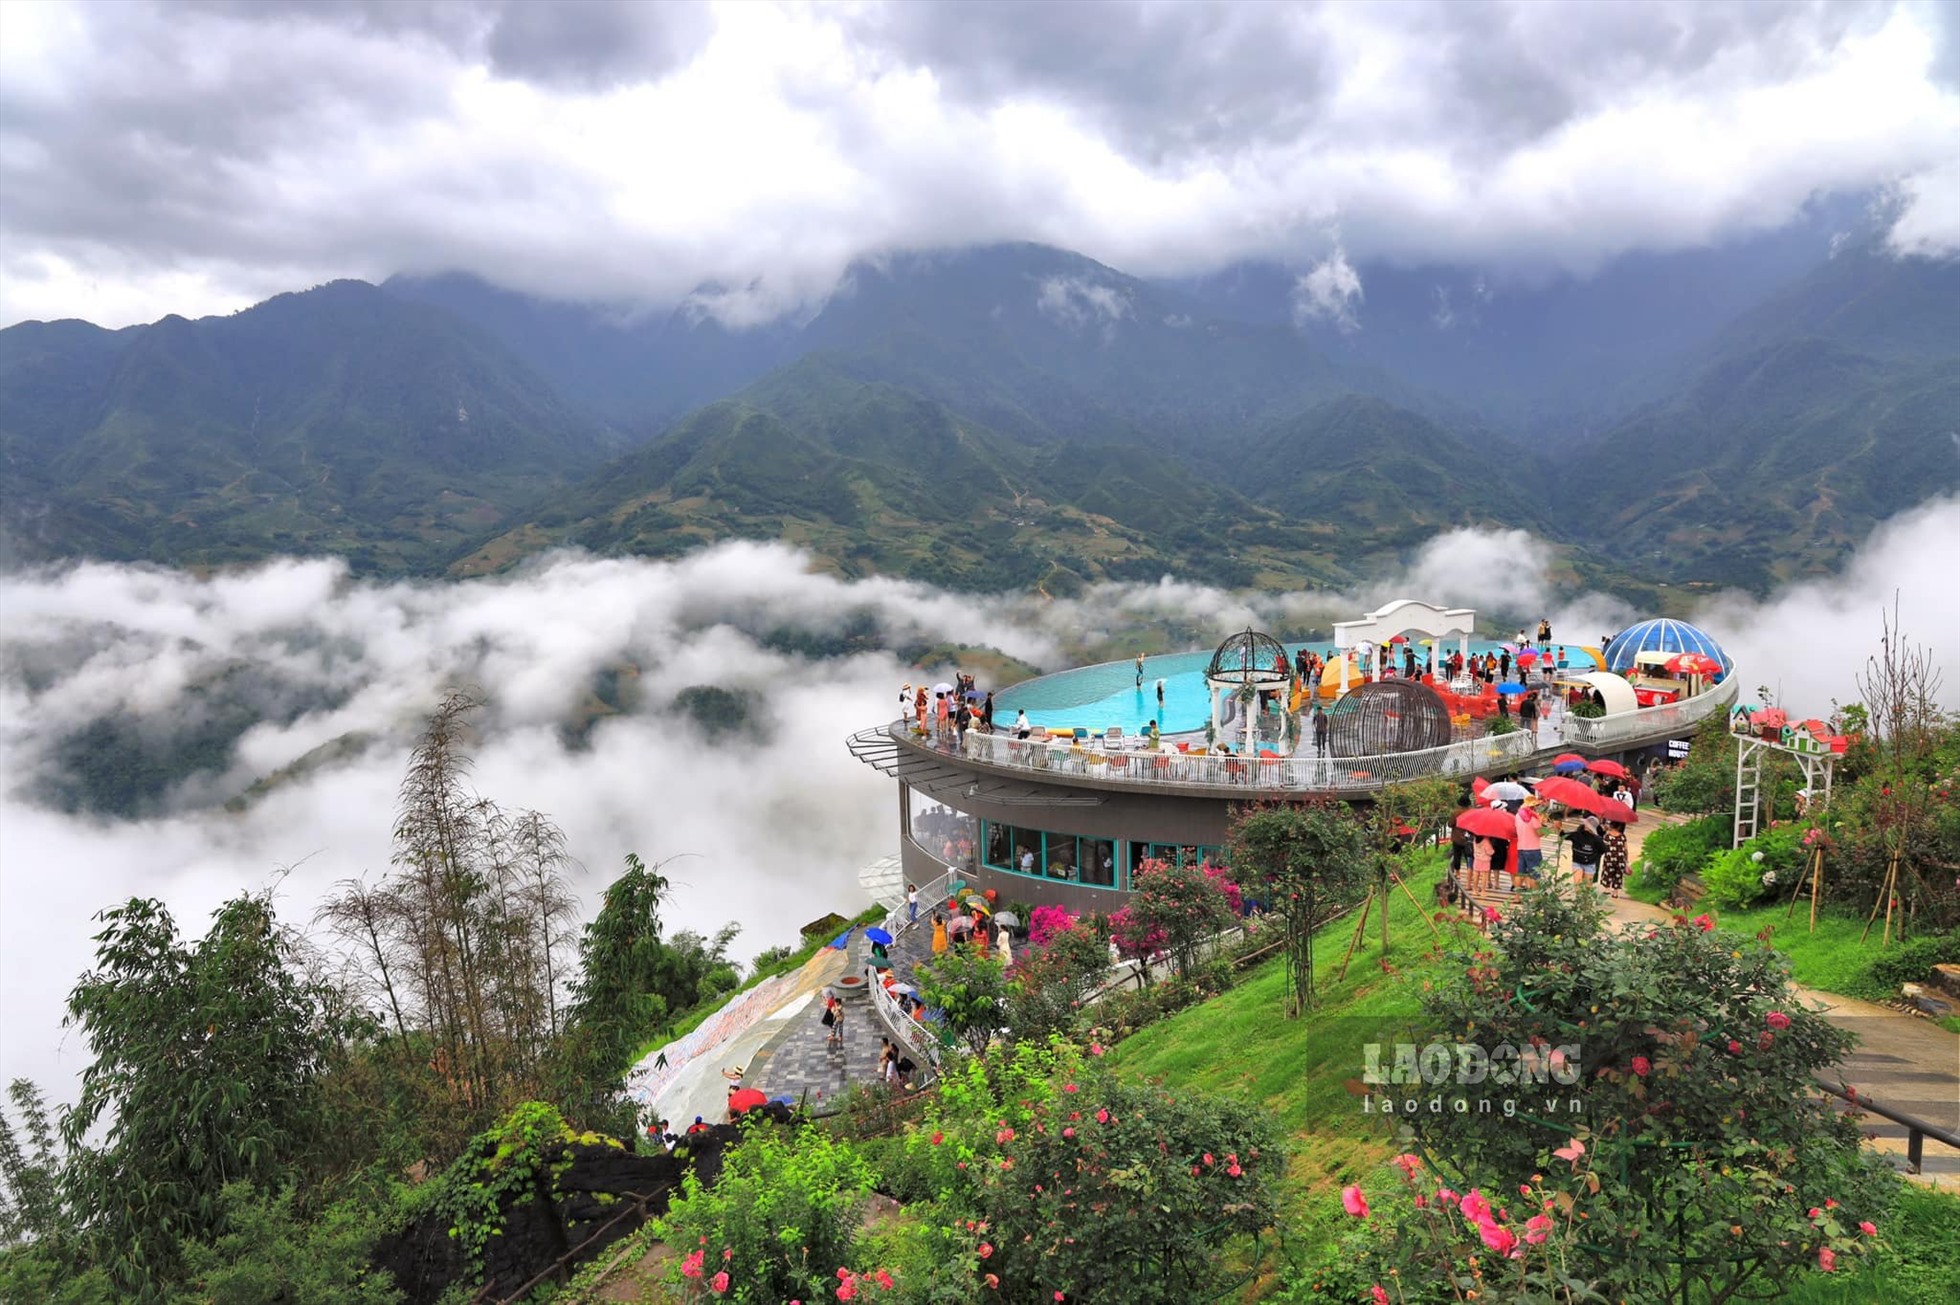 Du khách có thể bơi thuyền trên bể bơi vô cực rộng hơn 400m2. Đây còn là địa điểm lý tưởng để du khách săn mây, ngắm nhìn bản làng và núi rừng hùng vĩ.